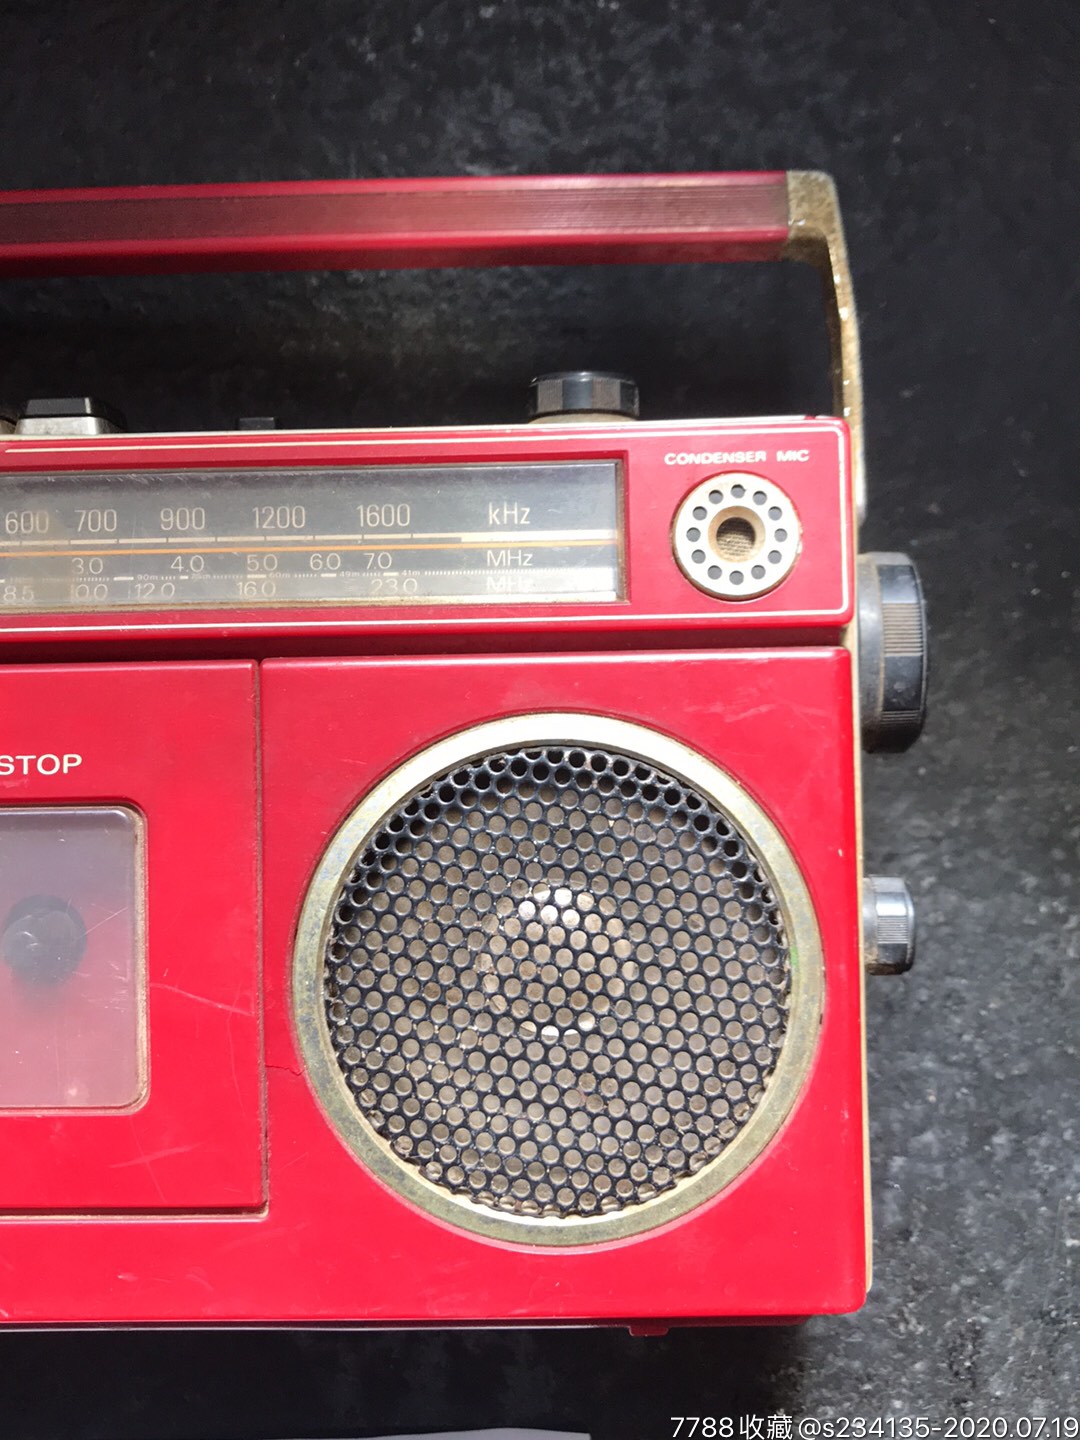 sanyo三洋m1700h小单卡收录机/少见红色机身/老式磁带手提袖珍录音机